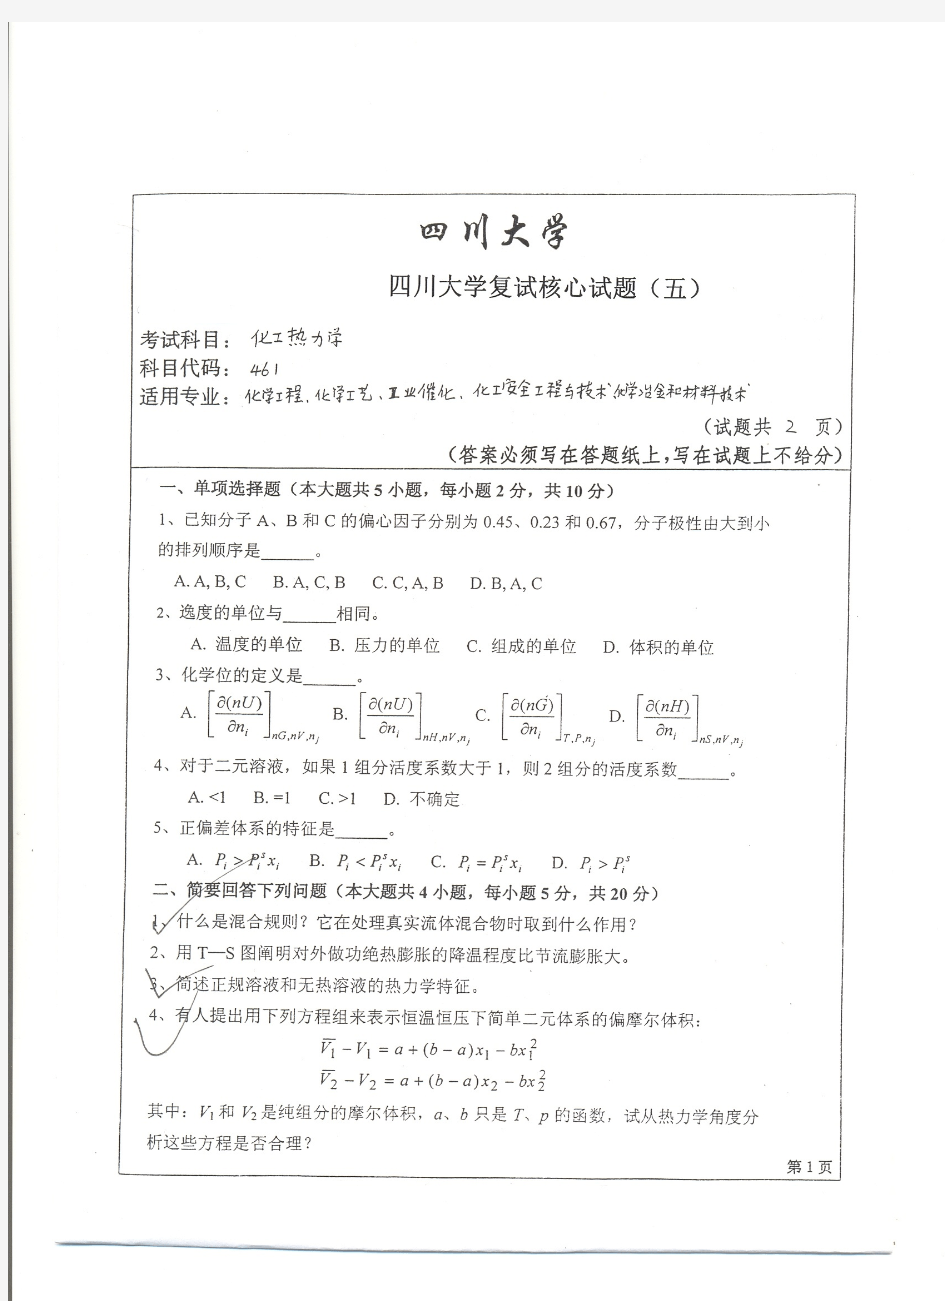 四川大学化工热力学考研复试核心试题(五)